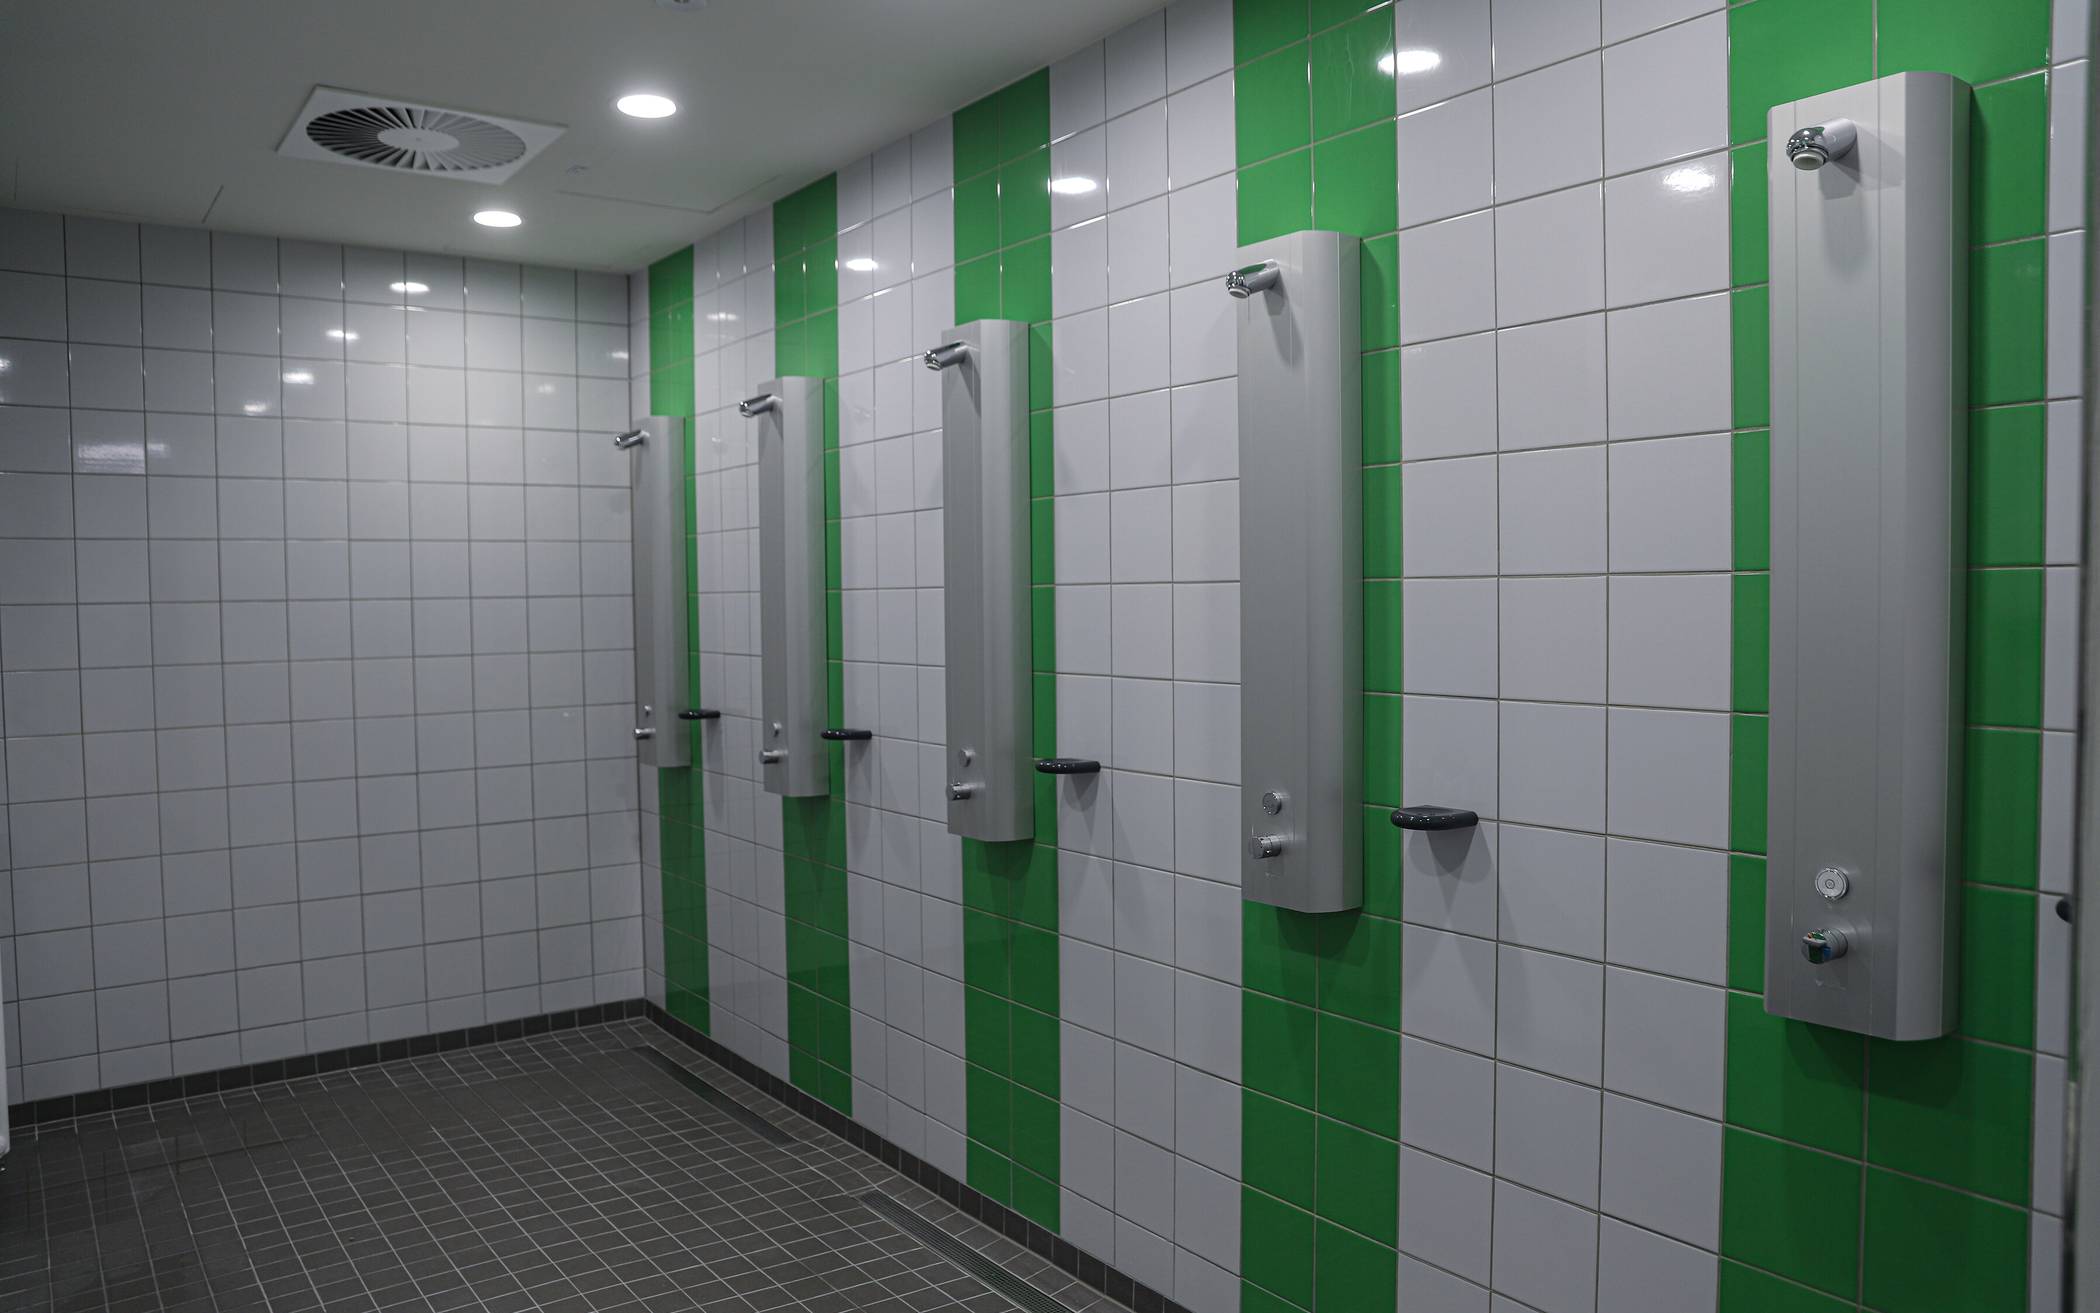 Der Duschbereich in der Halle an der Nevigeser Straße.